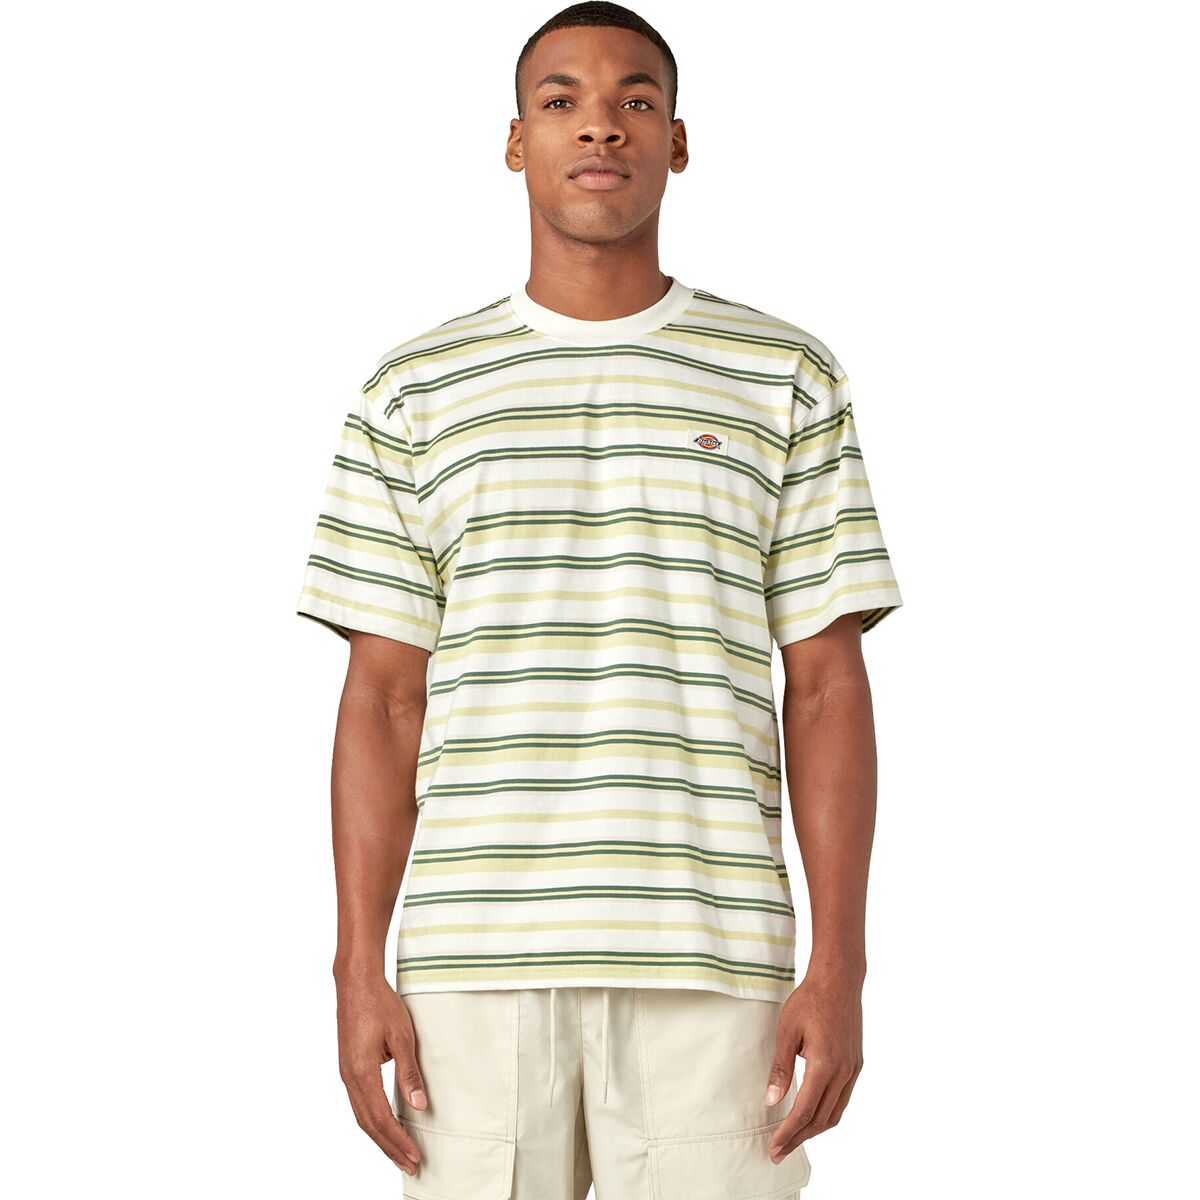 Glade Spring Stripe T-Shirt - Men